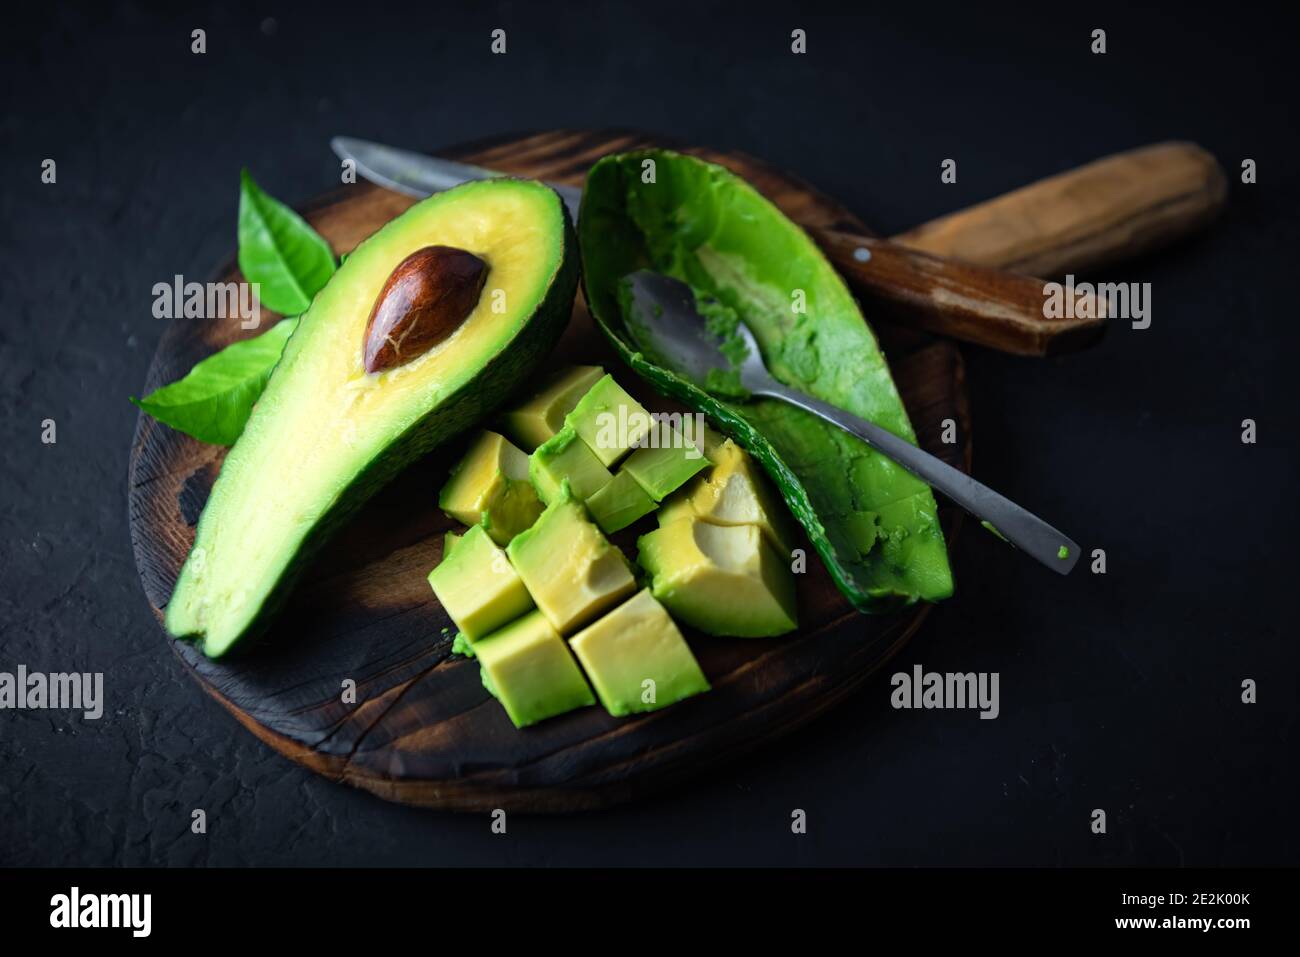 Frutta fresca all'avocado su tavola di legno con cucchiaio e coltello. Il concetto di alimentazione sana. Fotografia alimentare Foto Stock